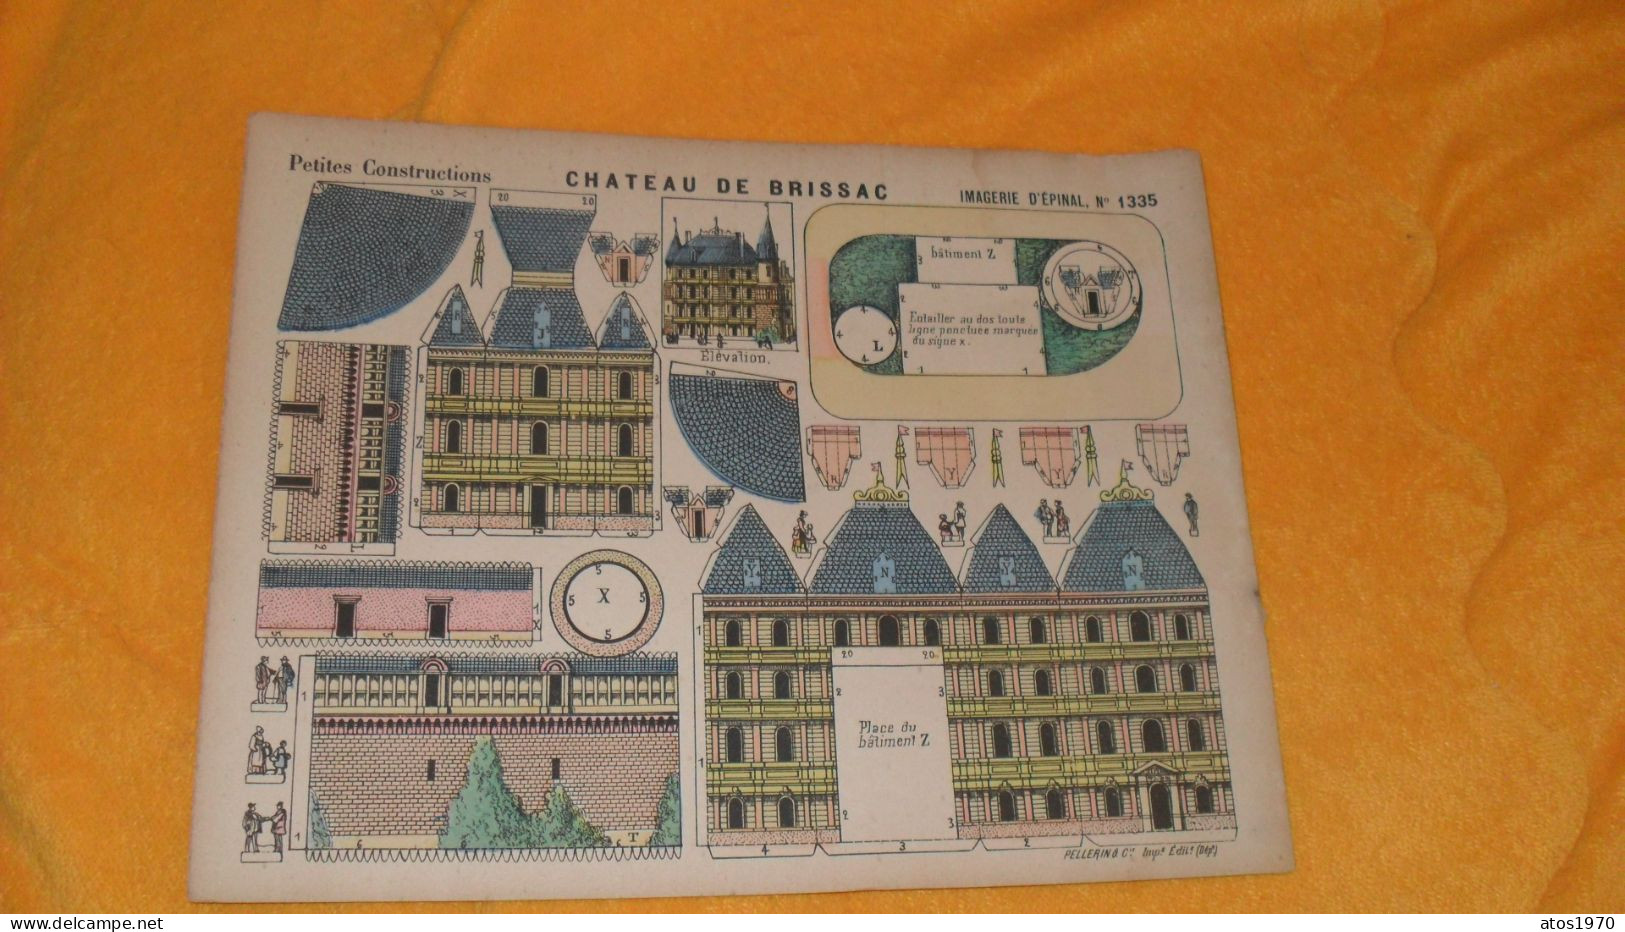 PETITES CONSTRUCTIONS CHATEAU DE BRISSAC IMAGERIE D'EPINAL N°1335 - Architecture